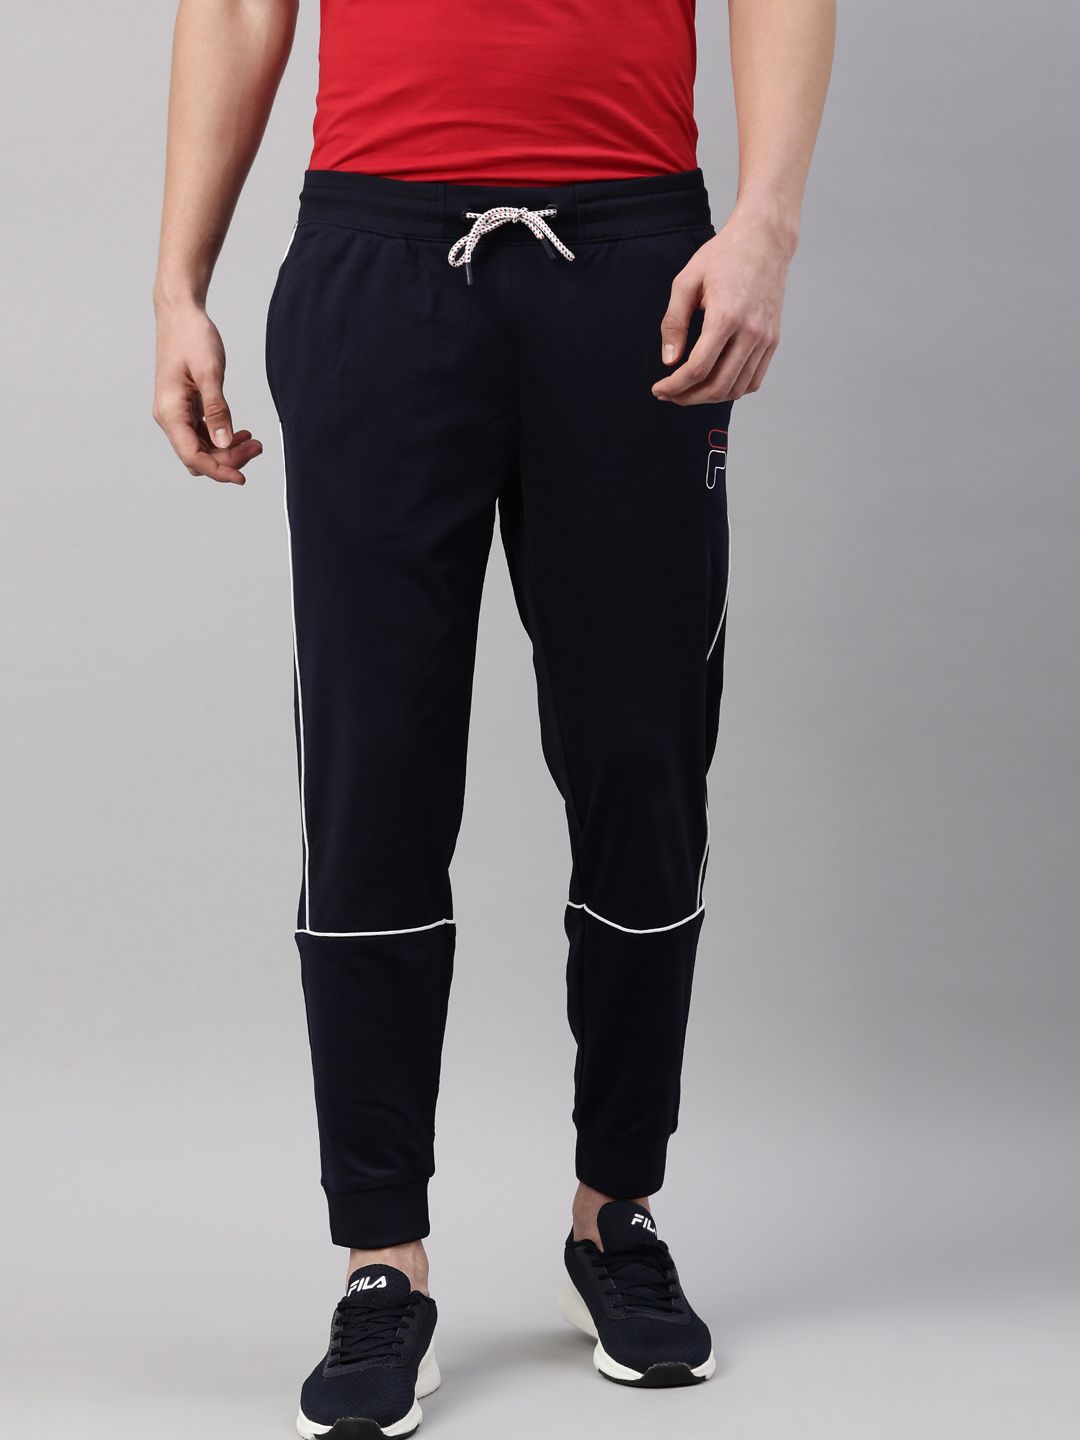 Buy Black Track Pants for Women by FILA Online  Ajiocom